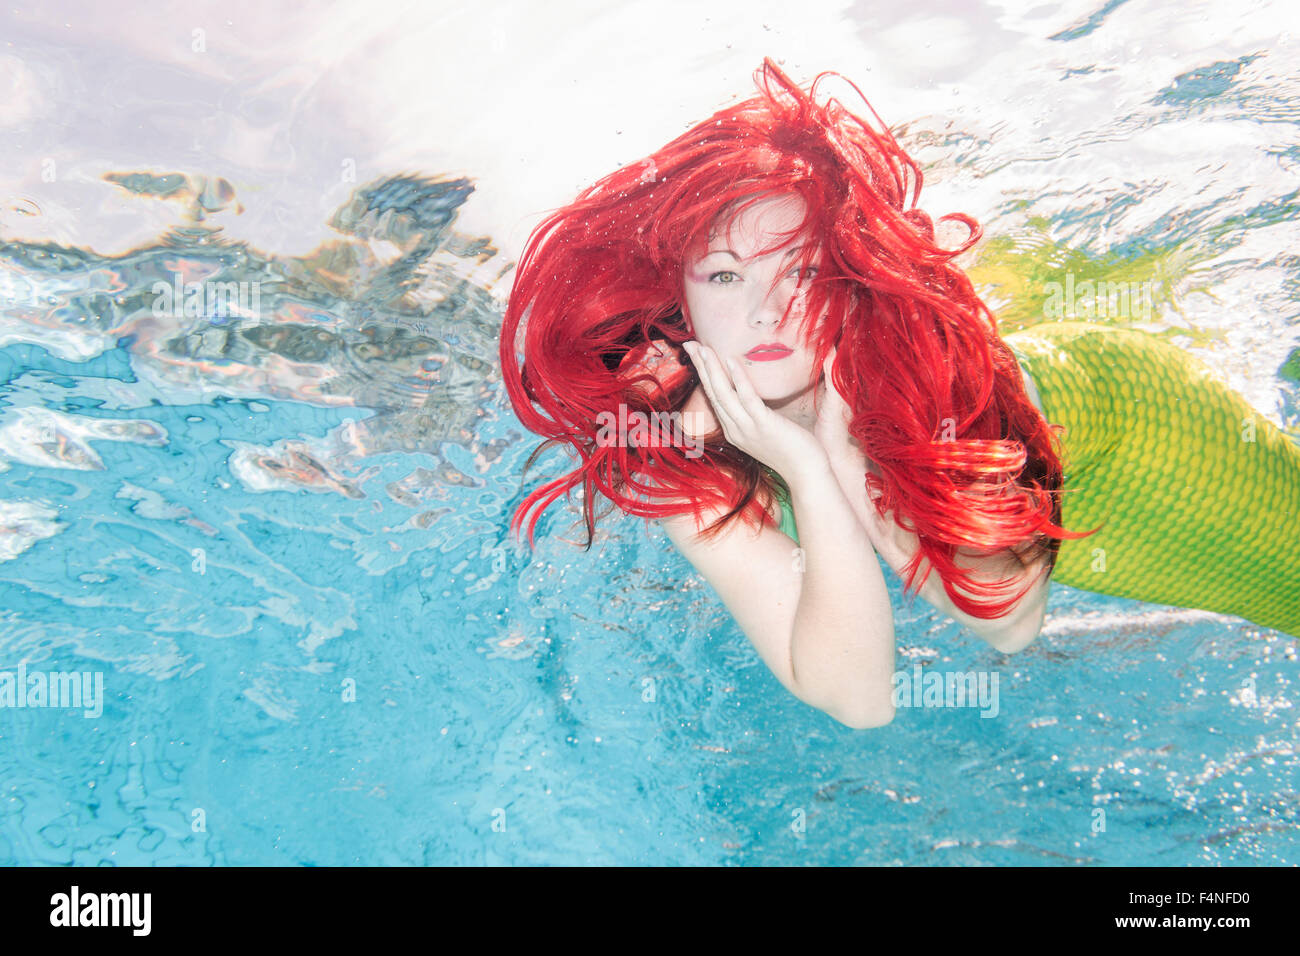 Mujer joven en el disfraz de Arielle, La sirenita, submarino Foto de stock